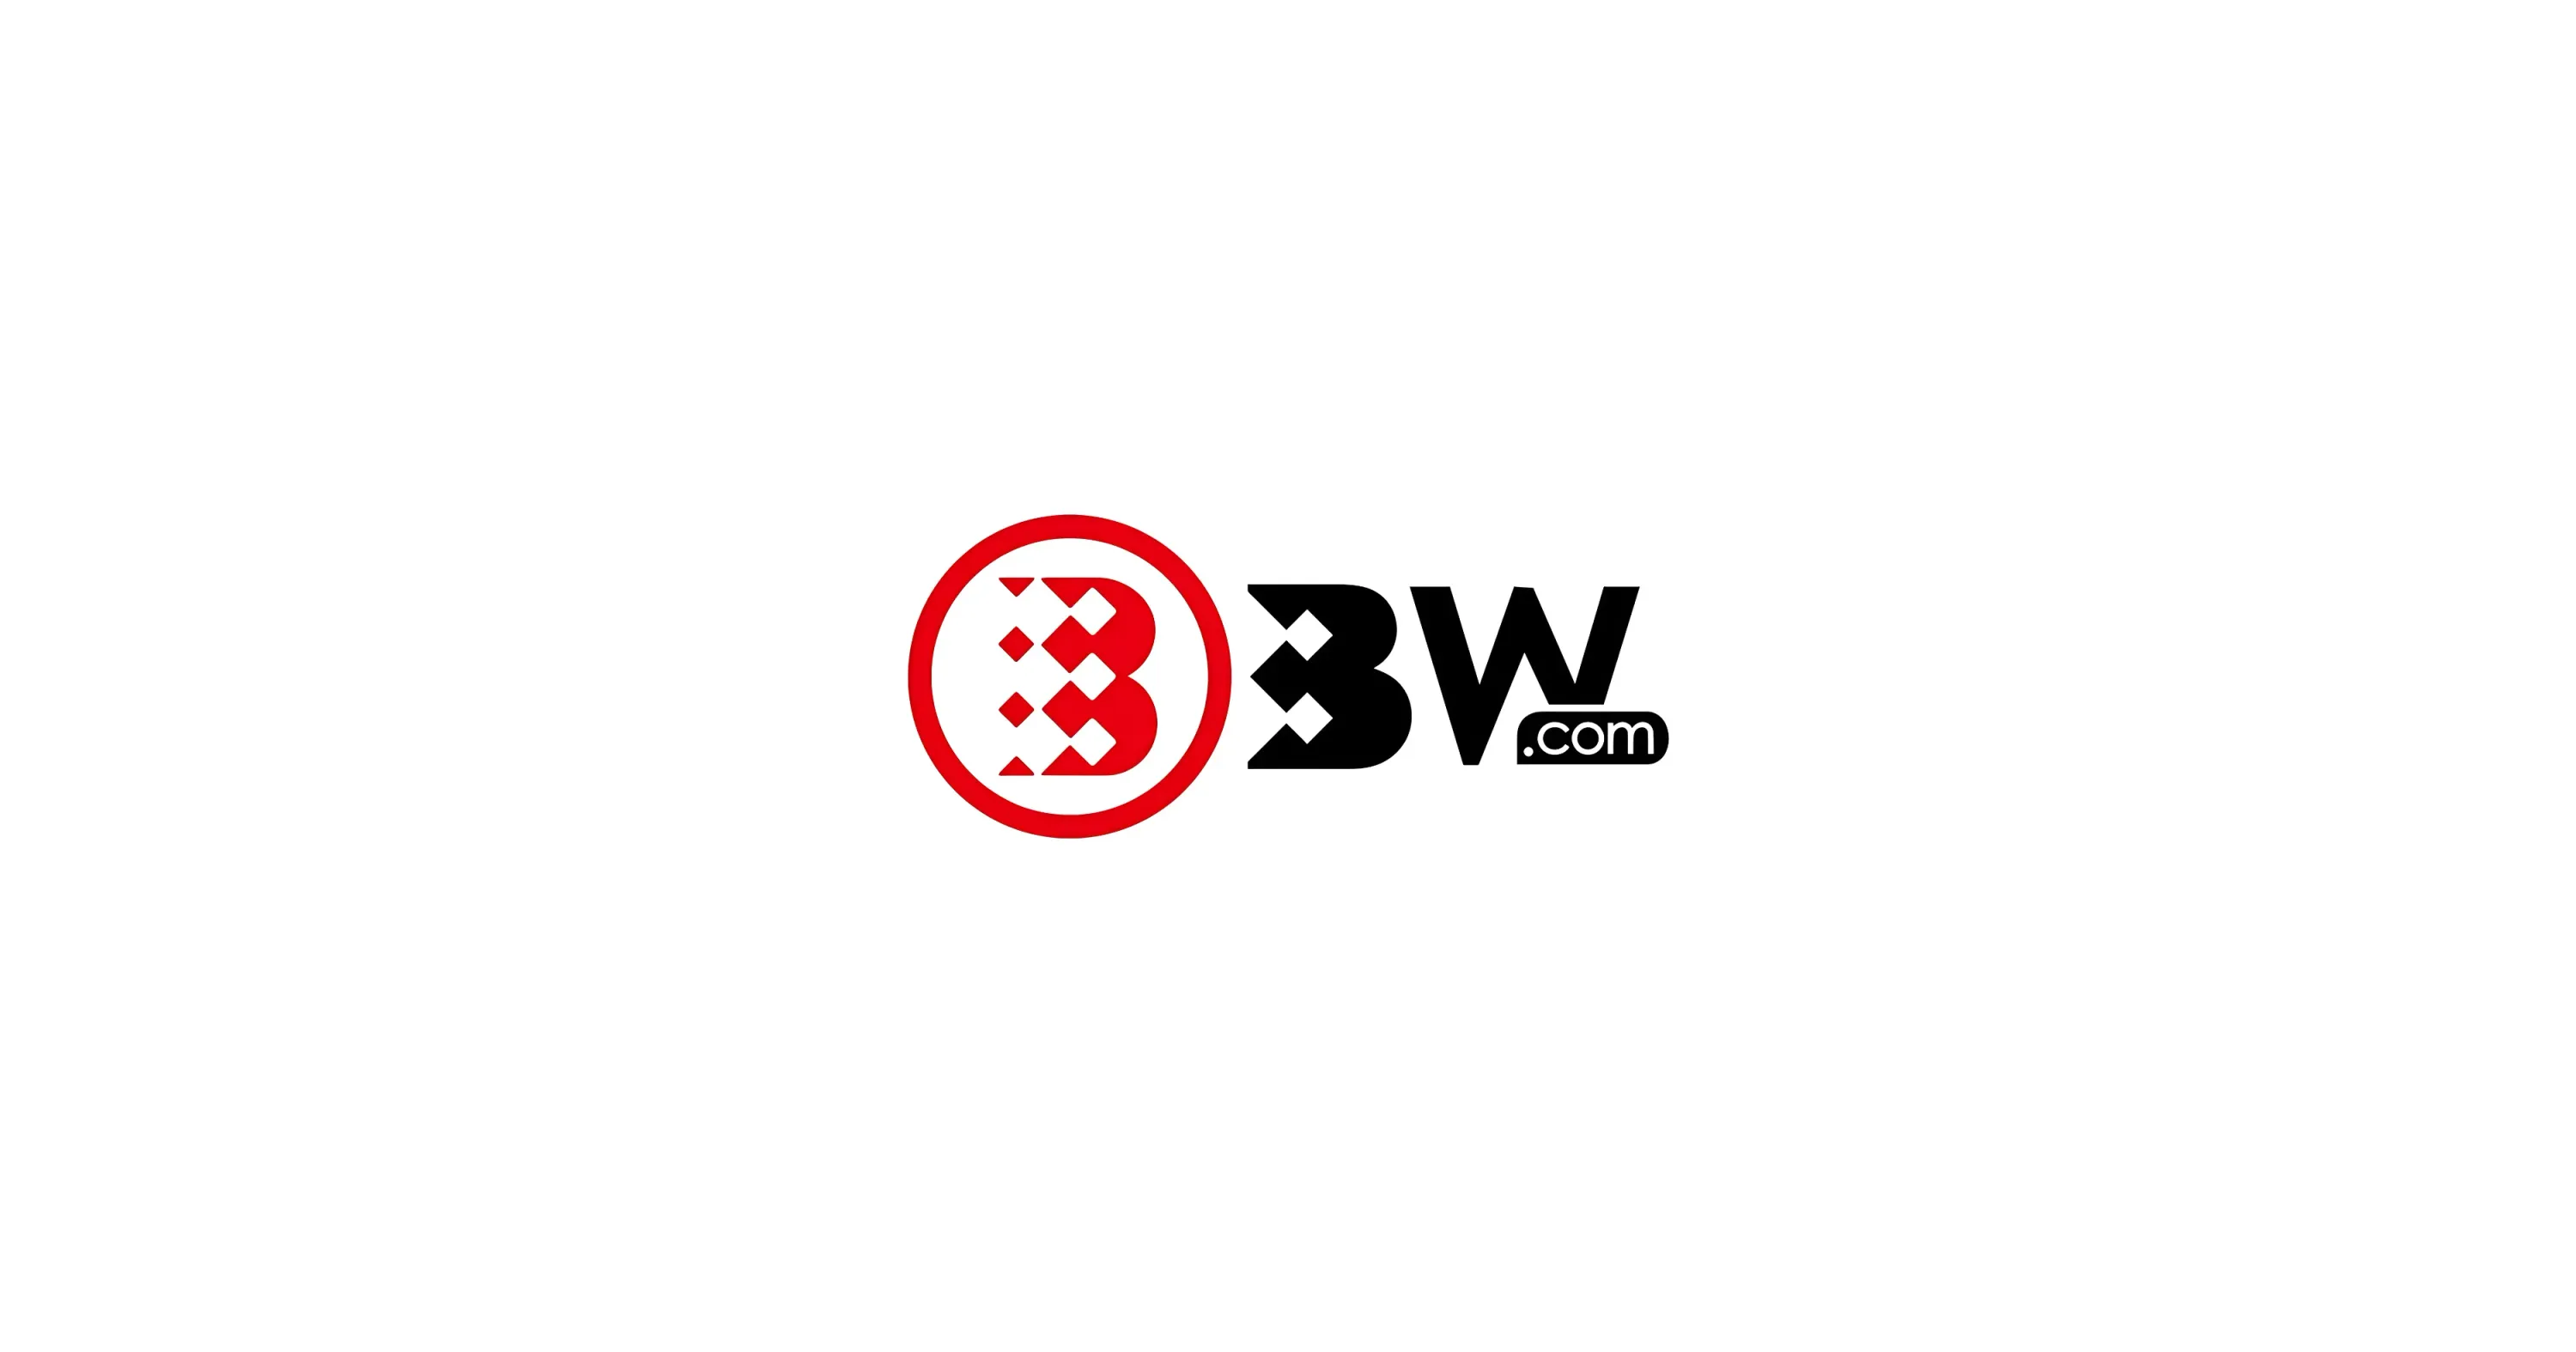 BW.com